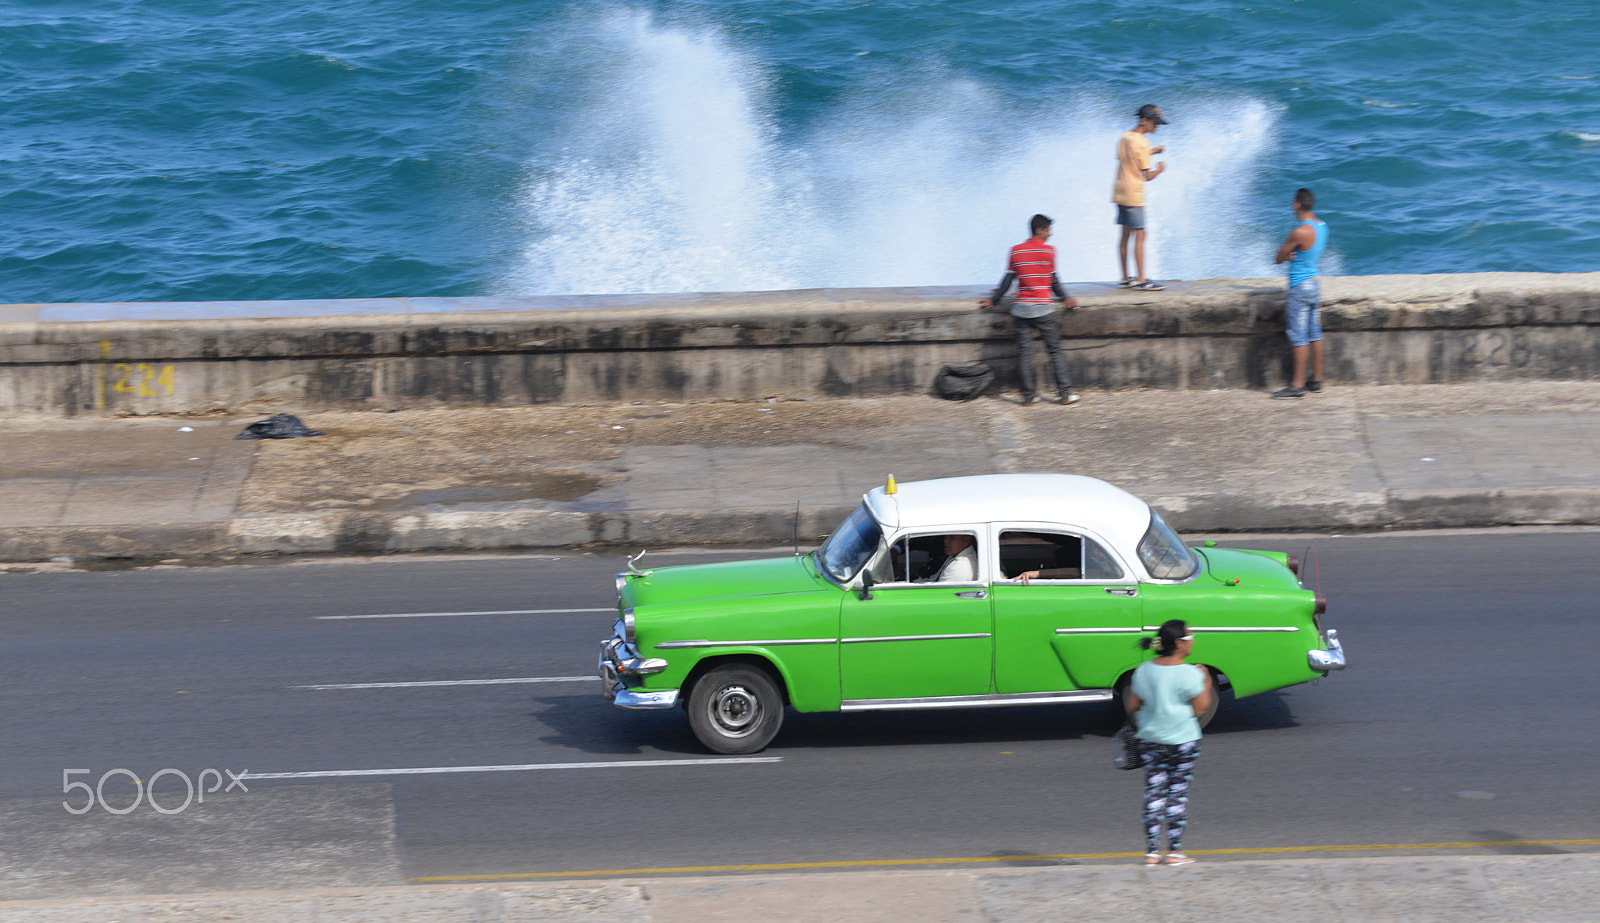 Nikon D610 + AF Zoom-Micro Nikkor 70-180mm f/4.5-5.6D ED sample photo. Havana november 2016 photography